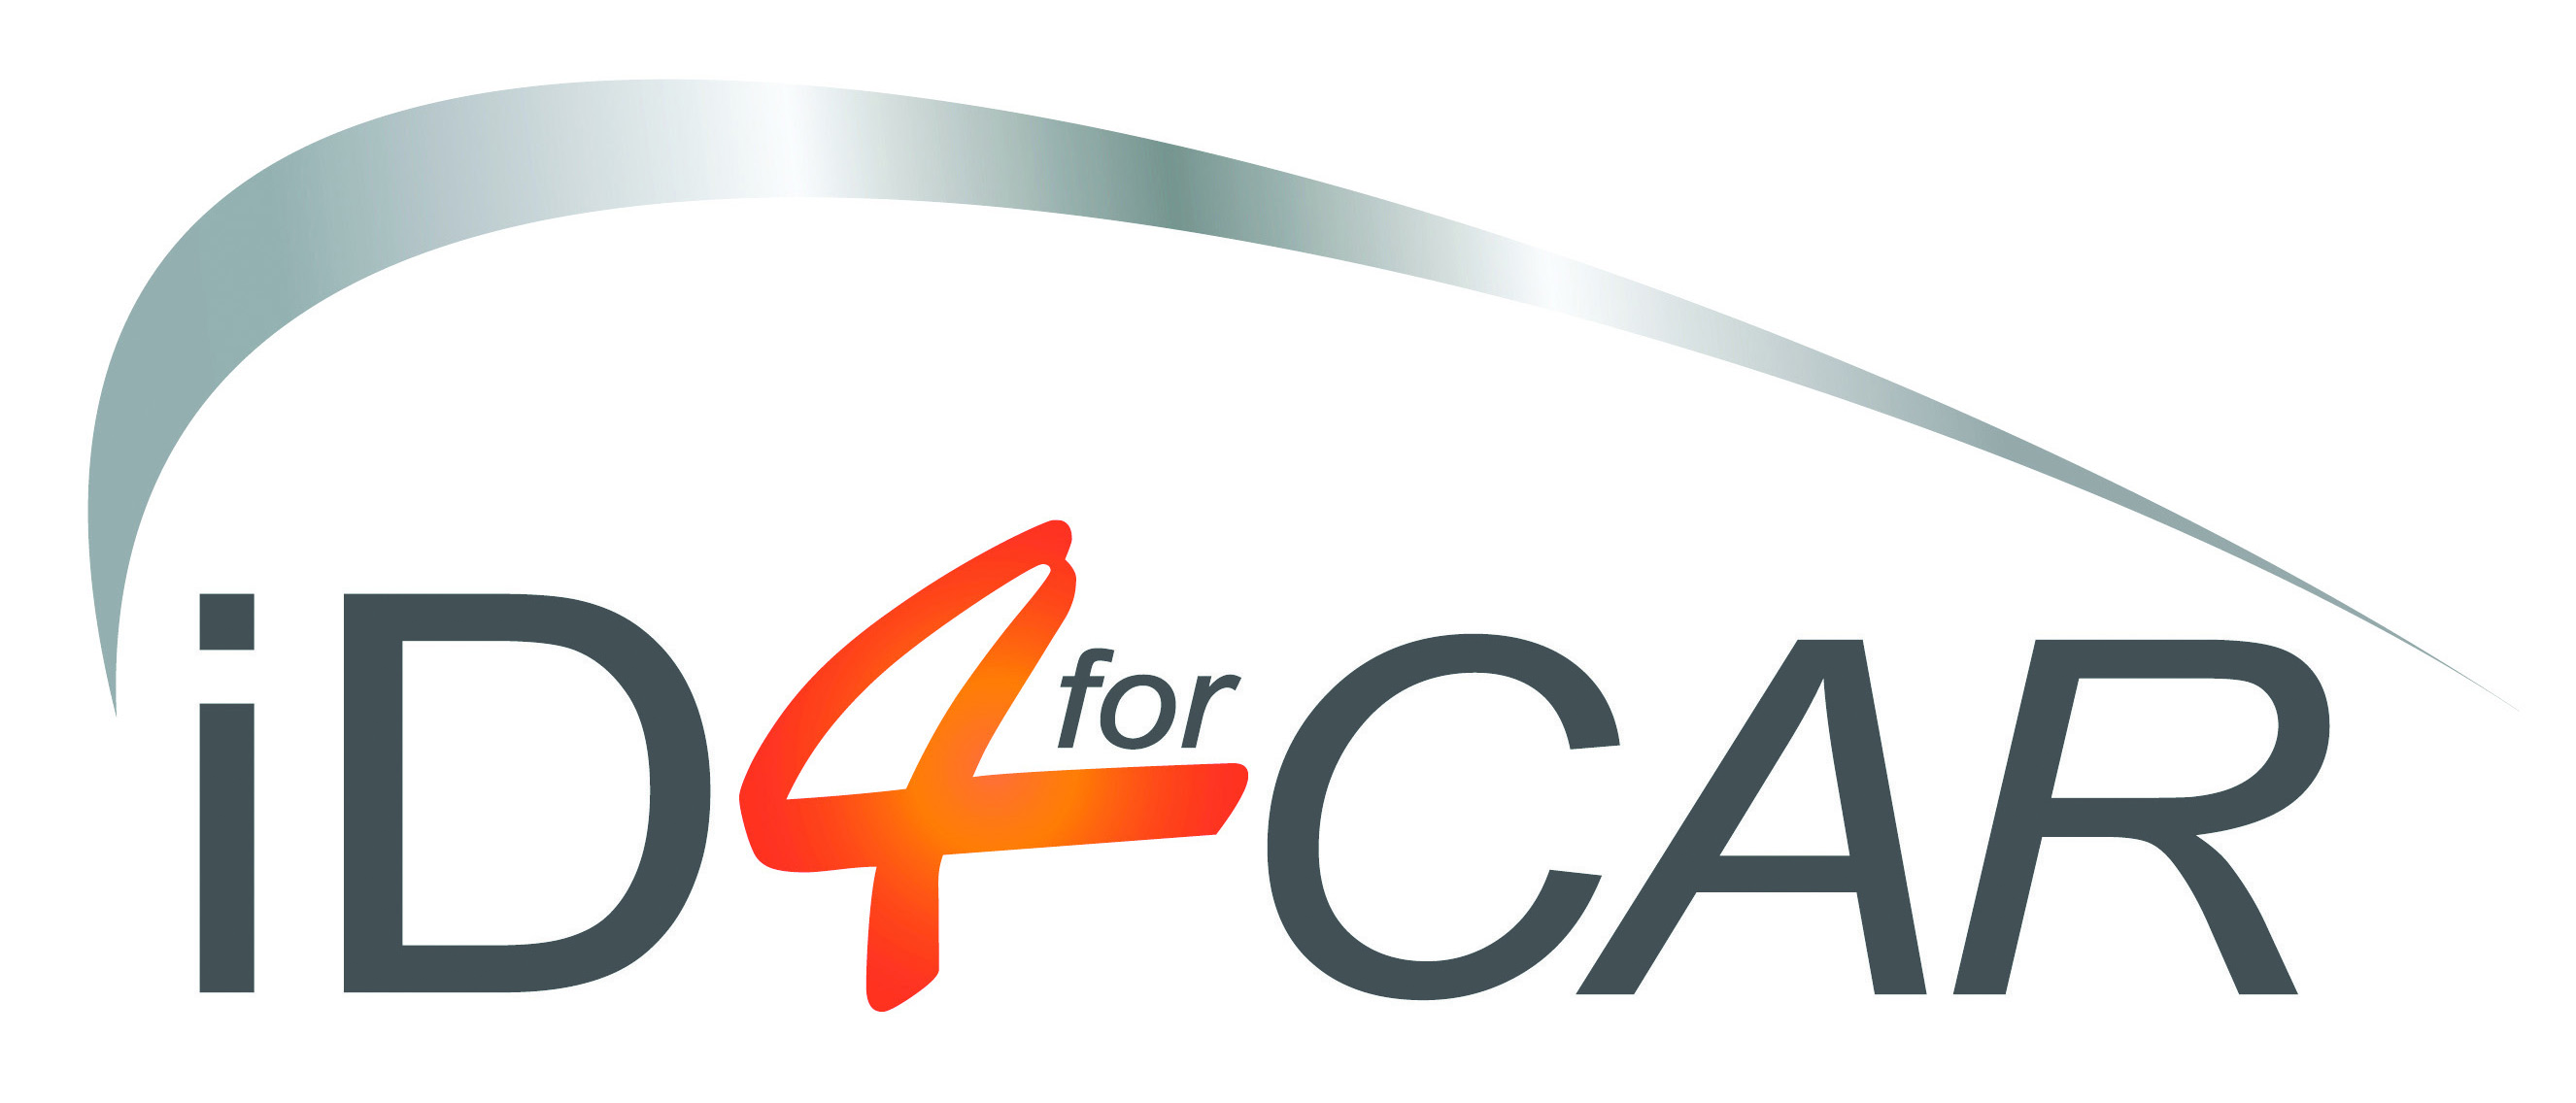 Logo ID4CAR